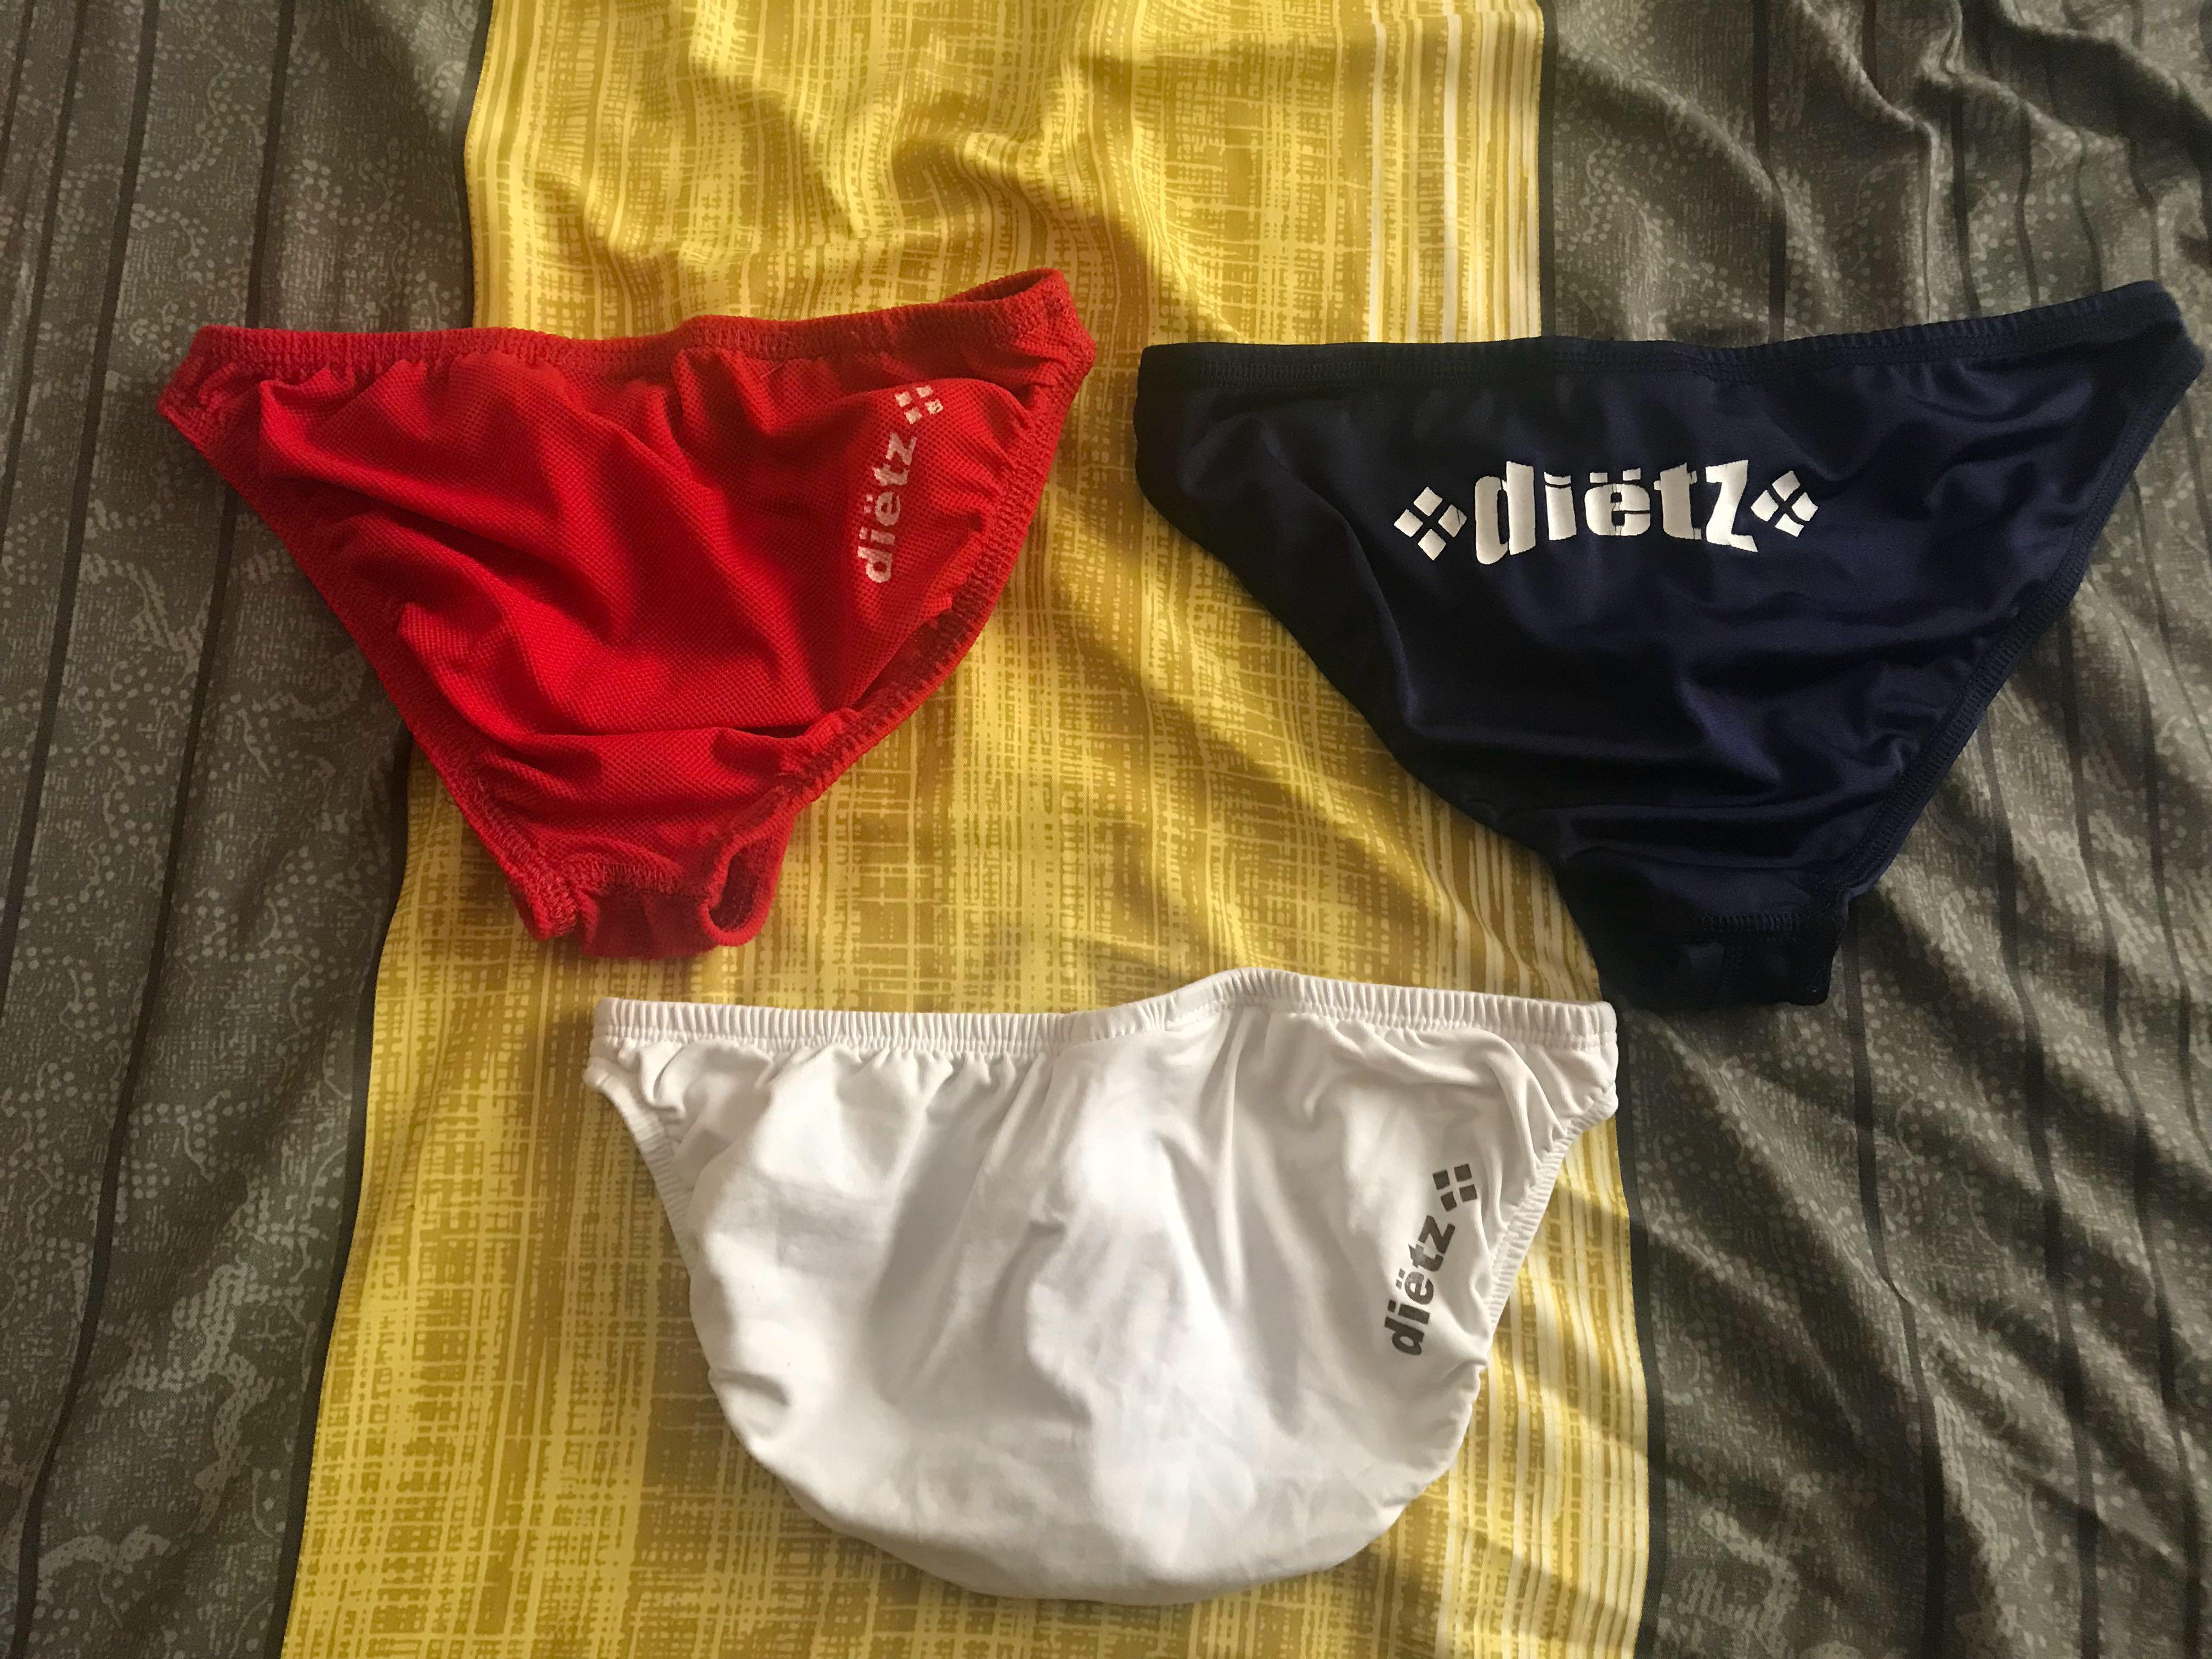 Men's underwear brand: Dietz